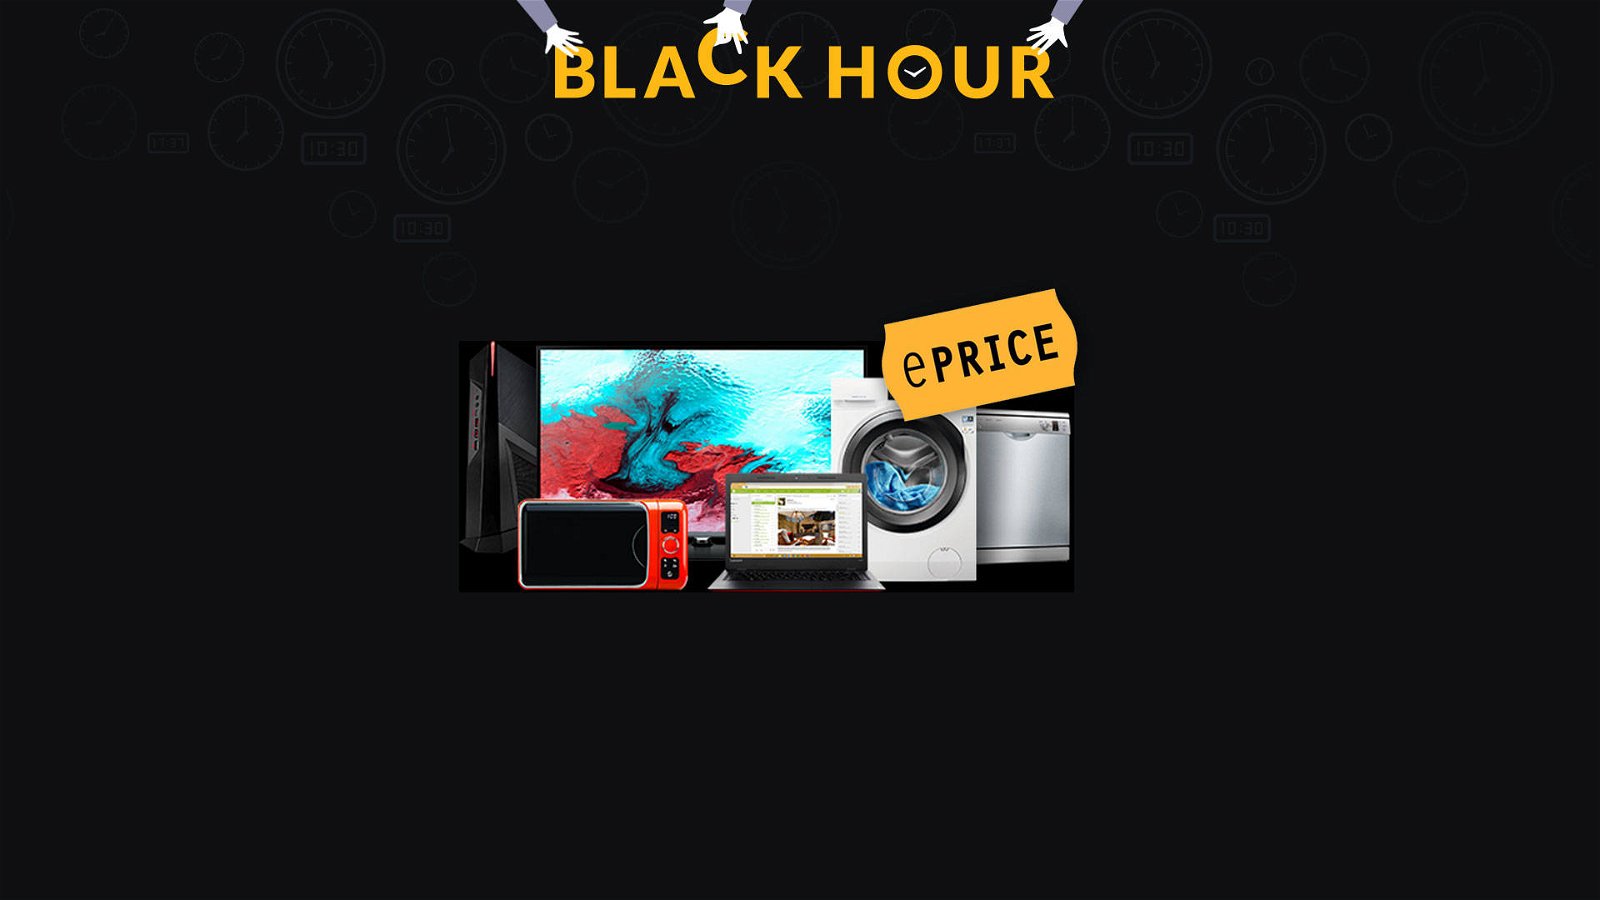 Immagine di ePRICE, la Black Hour di oggi dedicata ad offerte su prodotti HP